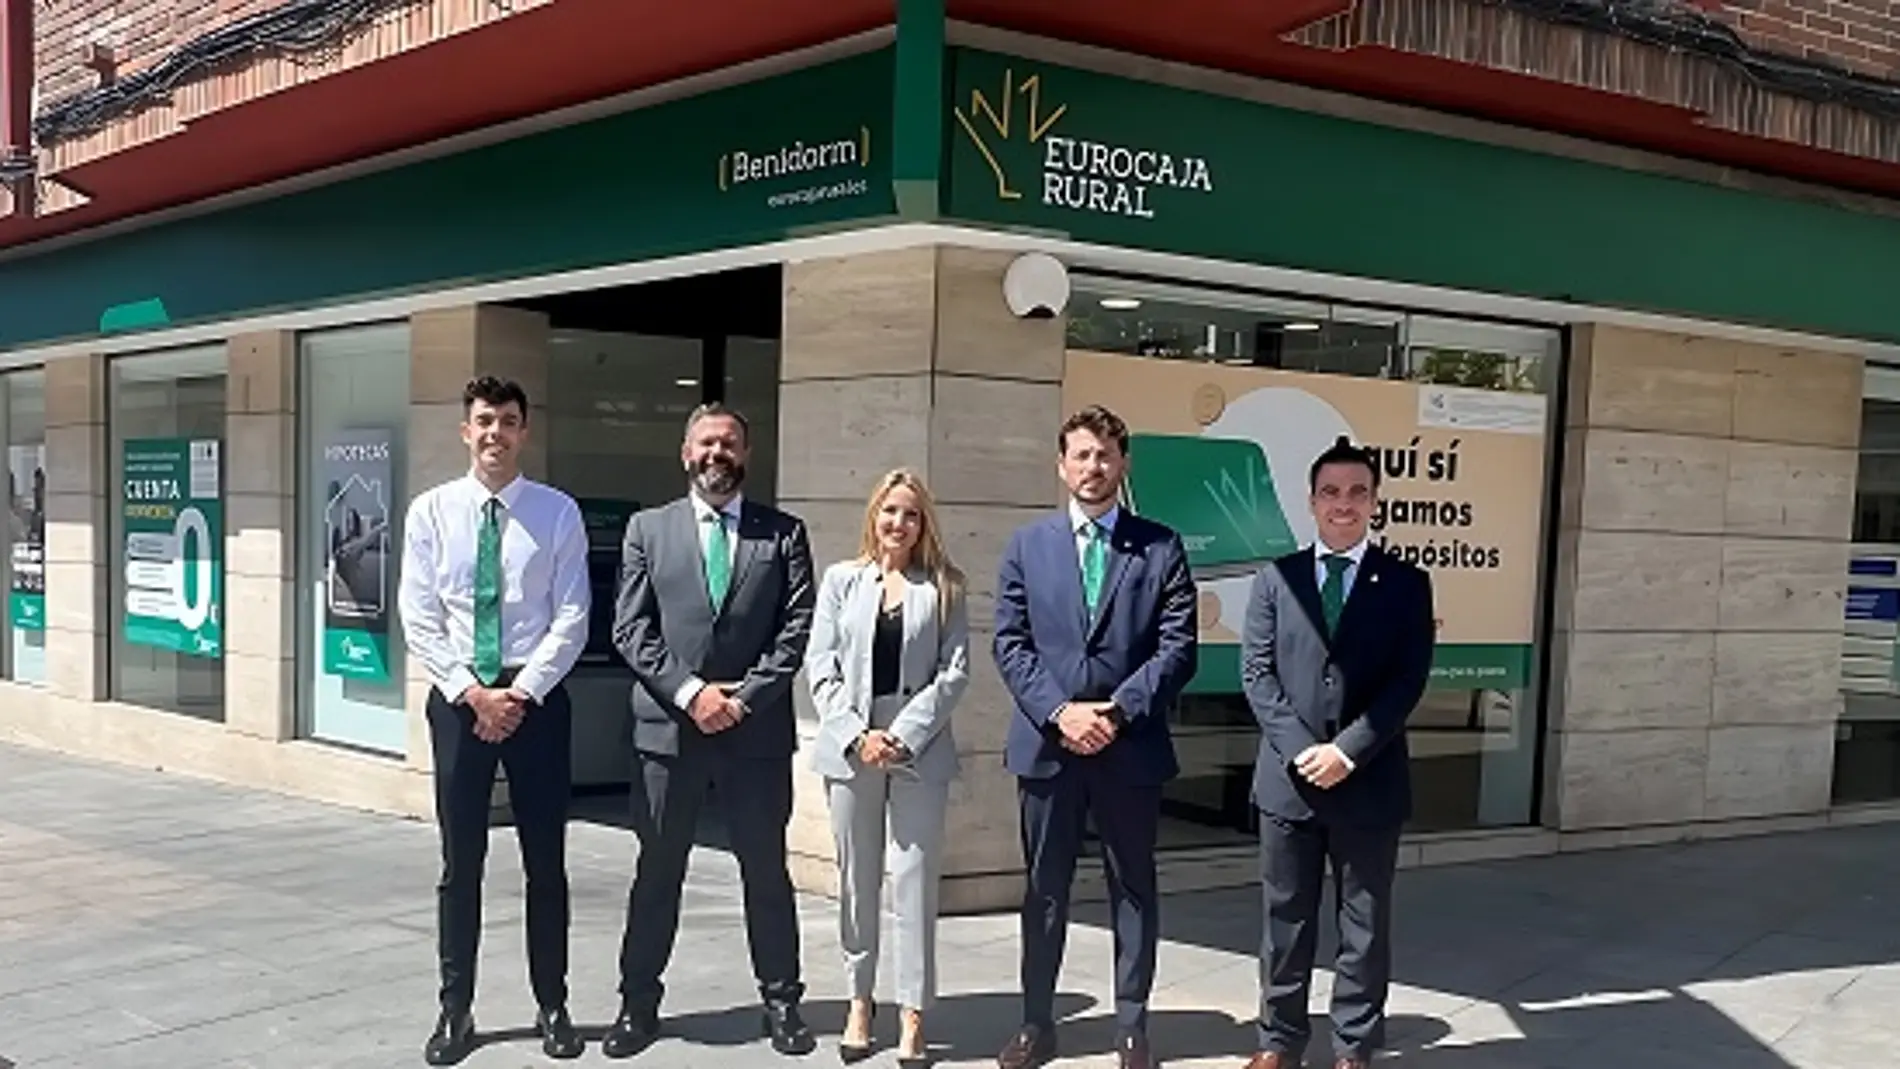 Eurocaja Rural en Benidorm abre sus puertas alcanzando la oficina 27 en la provincia de Alicante desde que en 2017 iniciara su Plan de Expansión en la Comunitat. 